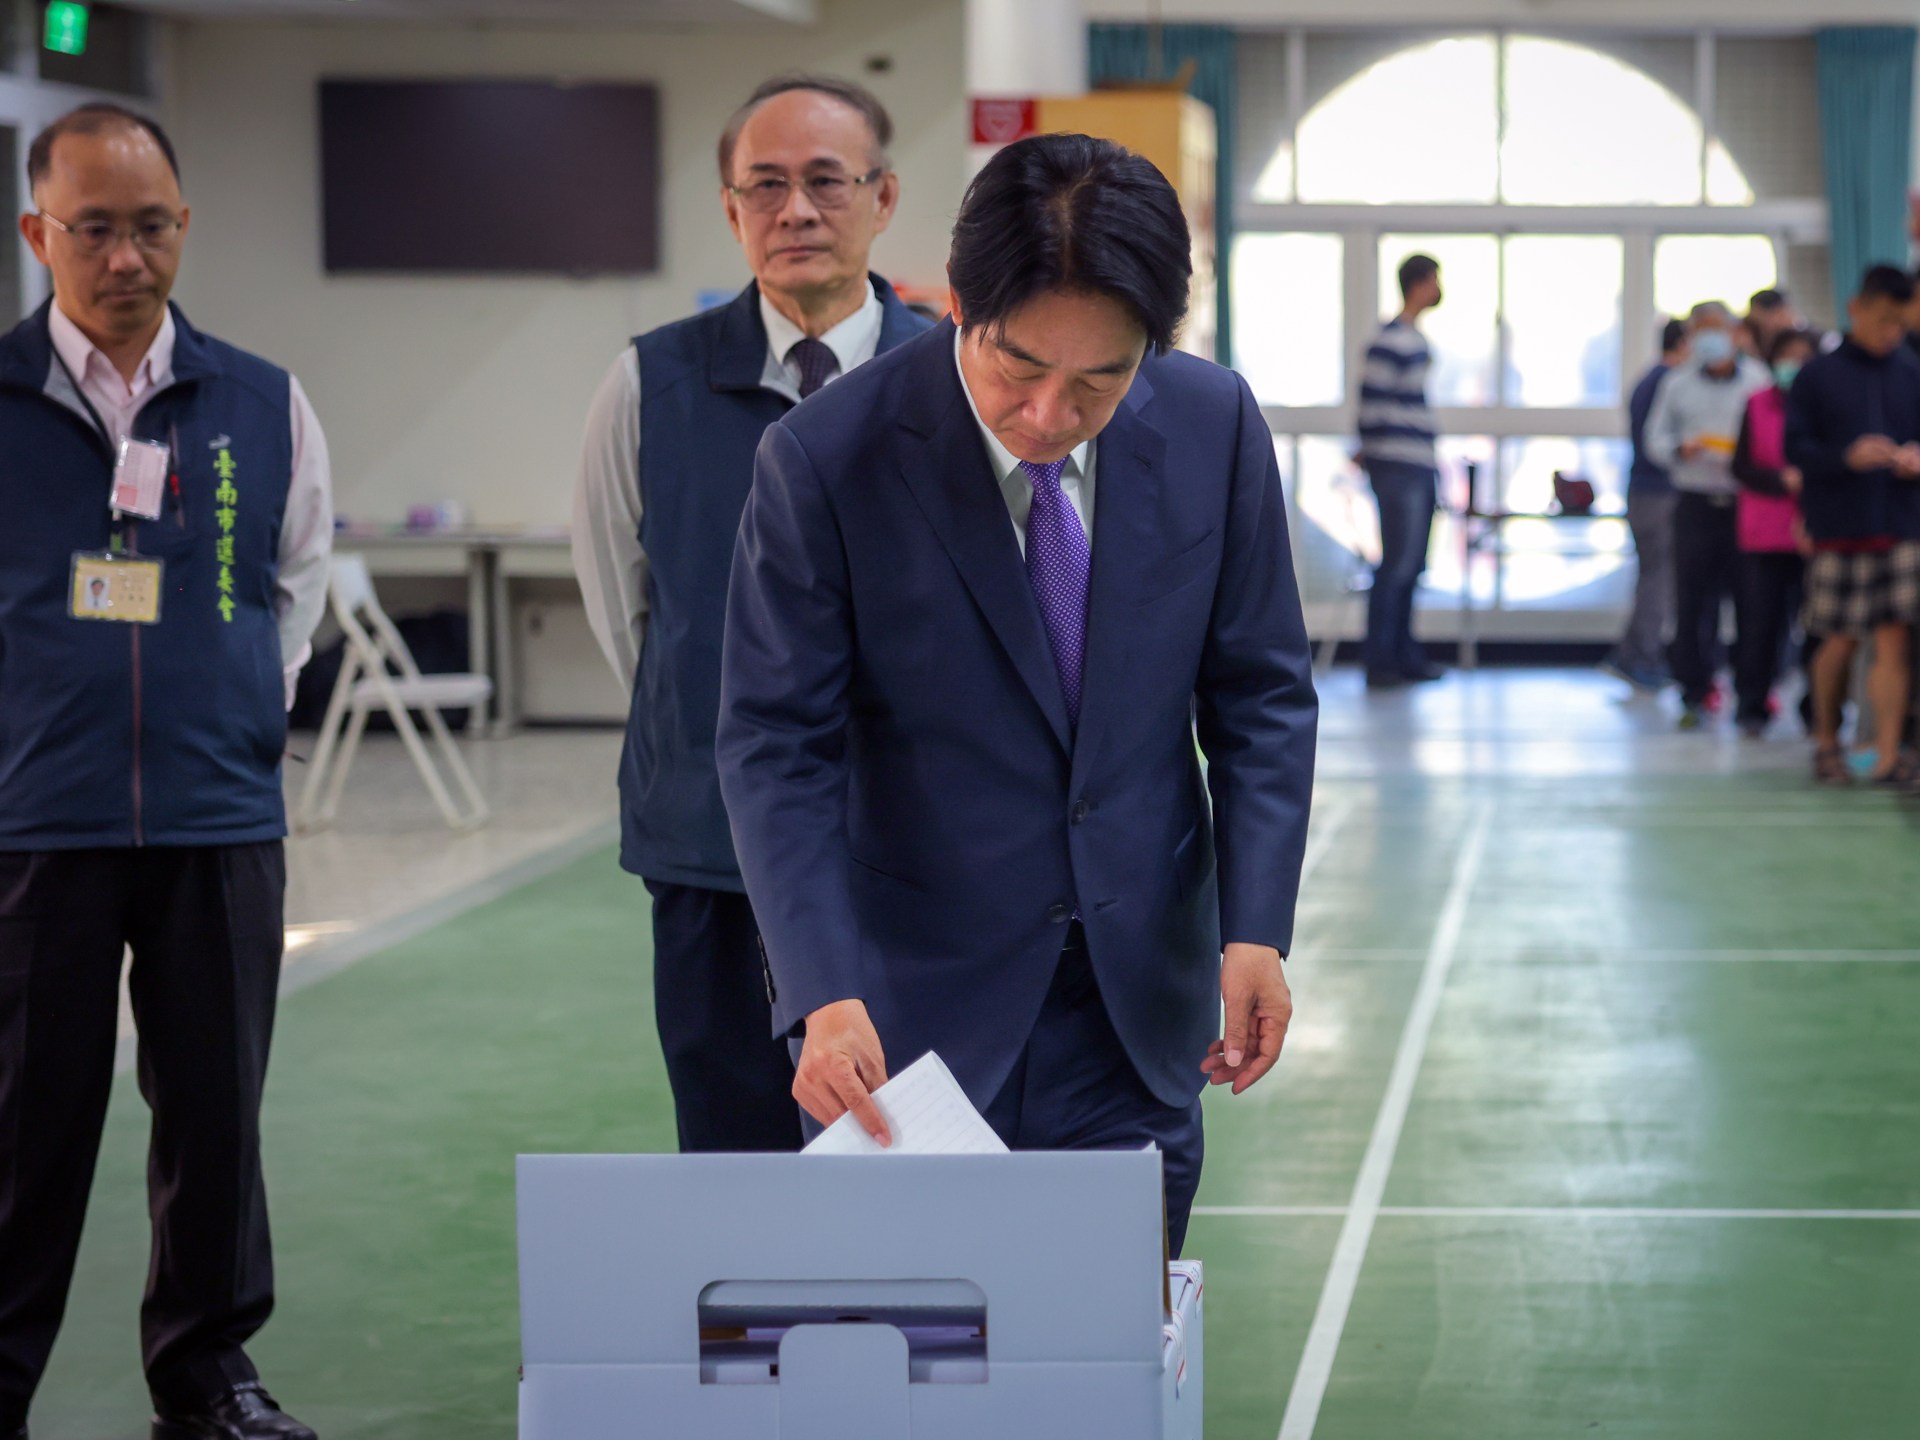 تايوان تنتخب رئيسها وبرلمانها وسط ترقب صيني | أخبار – البوكس نيوز